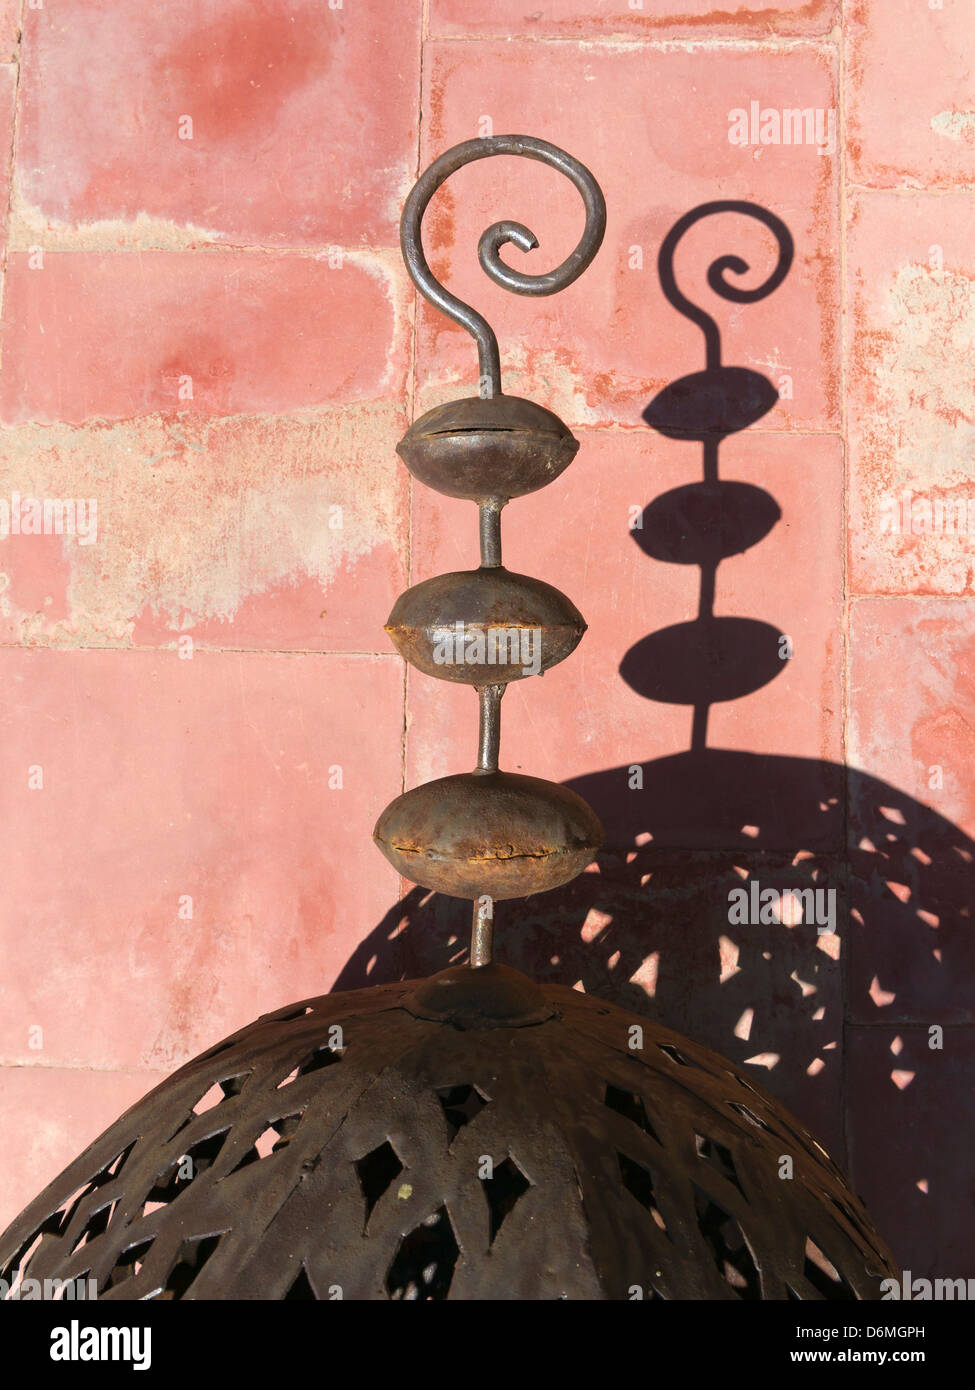 Dekorative marokkanische Schmiedekunst Hintergrund eine helle rote Farbe gesprenkelt durch Schatten wirft einen Schatten Stockfoto